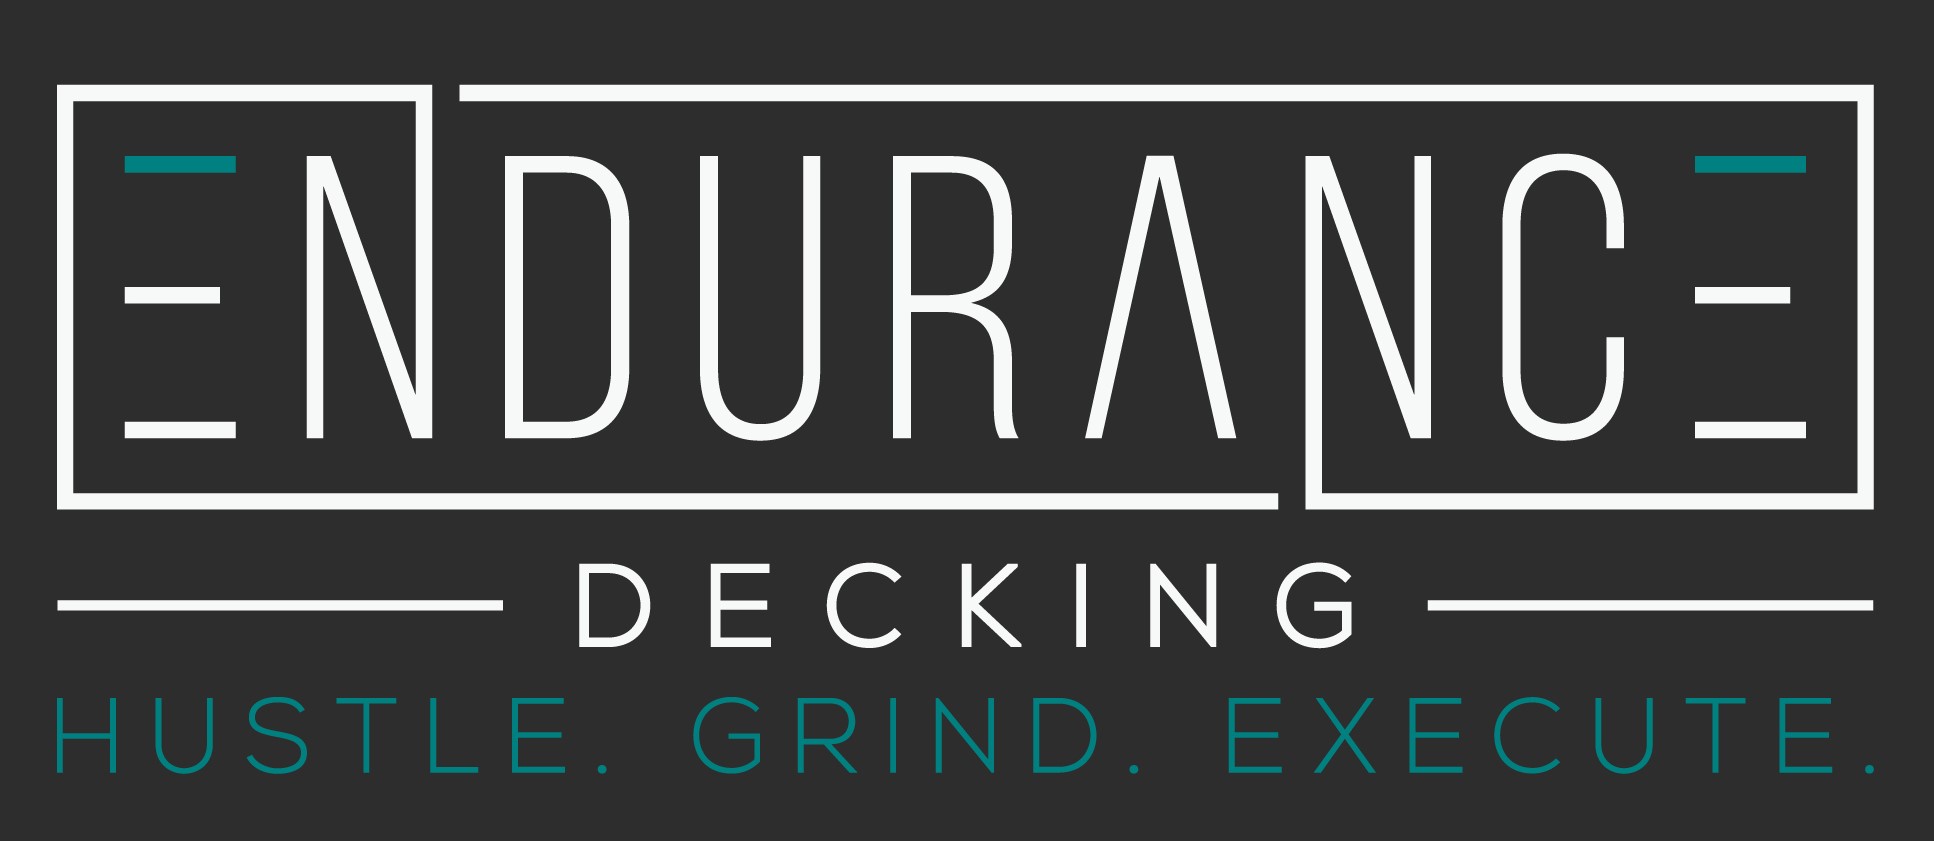 Endurance Decking, LLC Logo